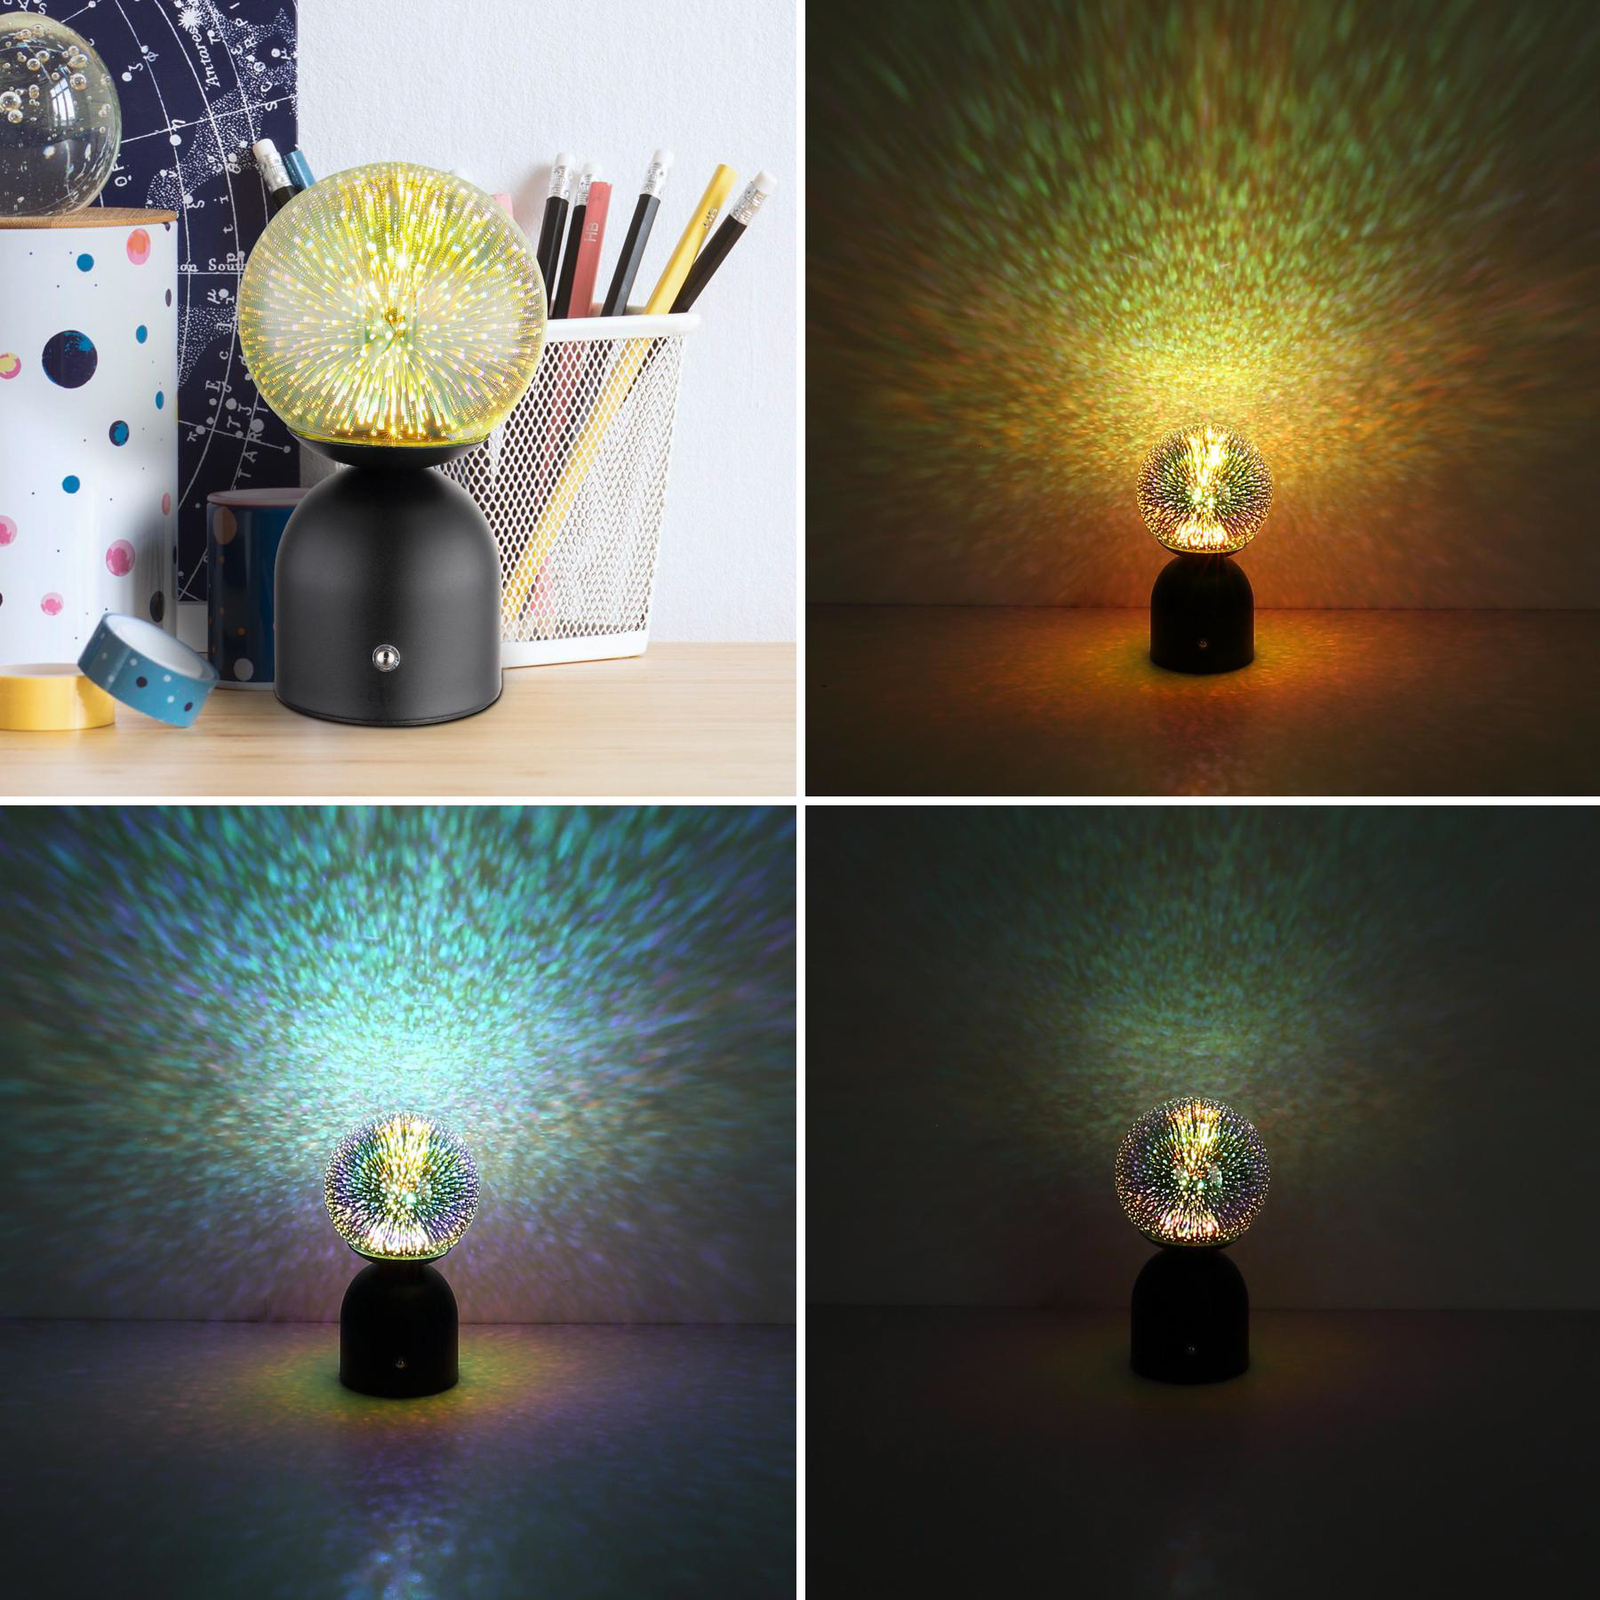 Julsy LED dobíjecí stolní lampa, černá, 3D, výška 21 cm, CCT